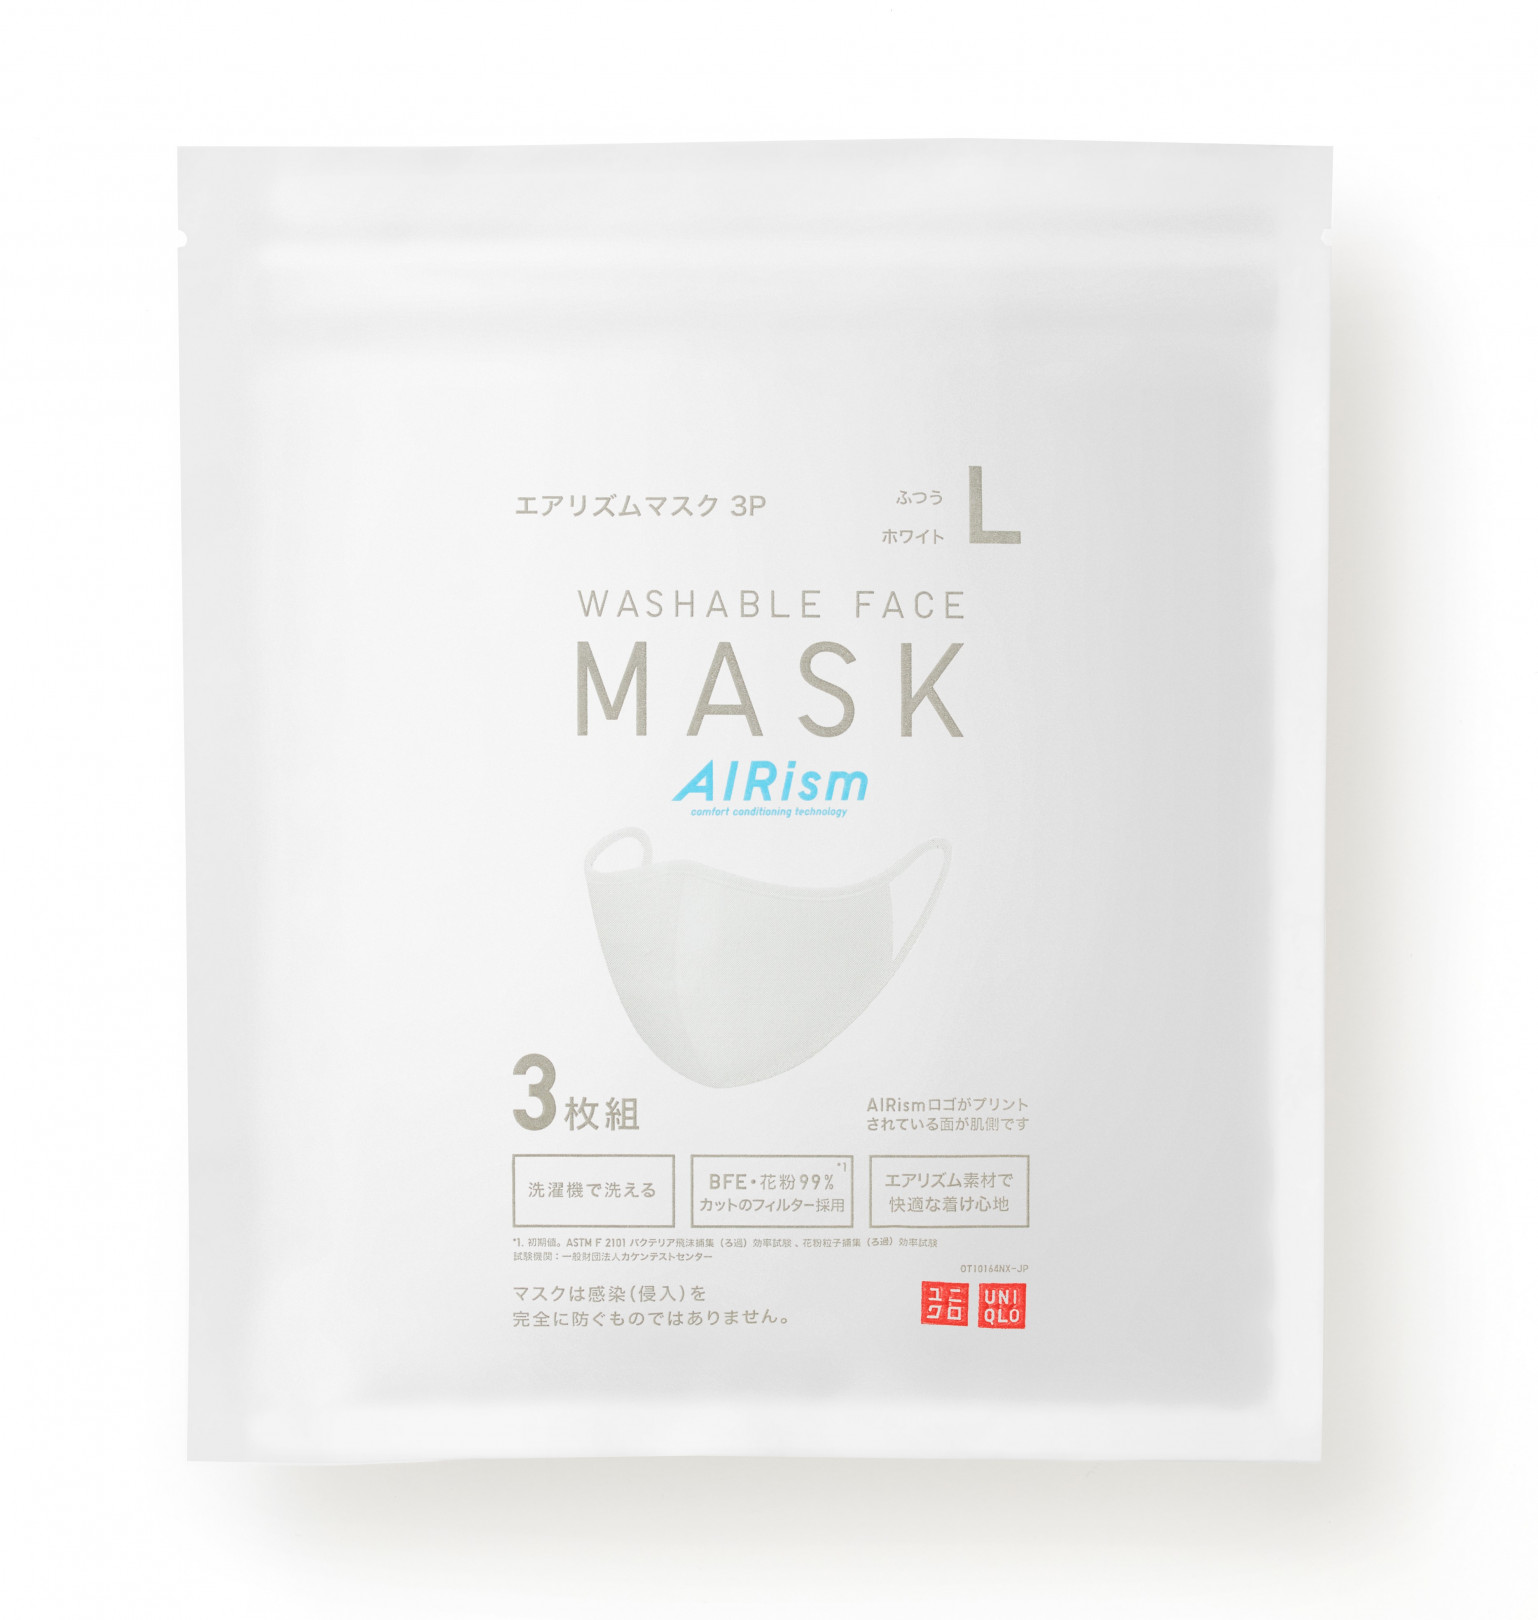 ユニクロ「エアリズムマスク」6月19日発売（1パック3枚組 / 990円）サイズ：こども（S）、ちいさめ（M）、ふつう（L）※こども（S）サイズは、小学生以上目安。お子様は保護者の管理監督下にてご使用ください。